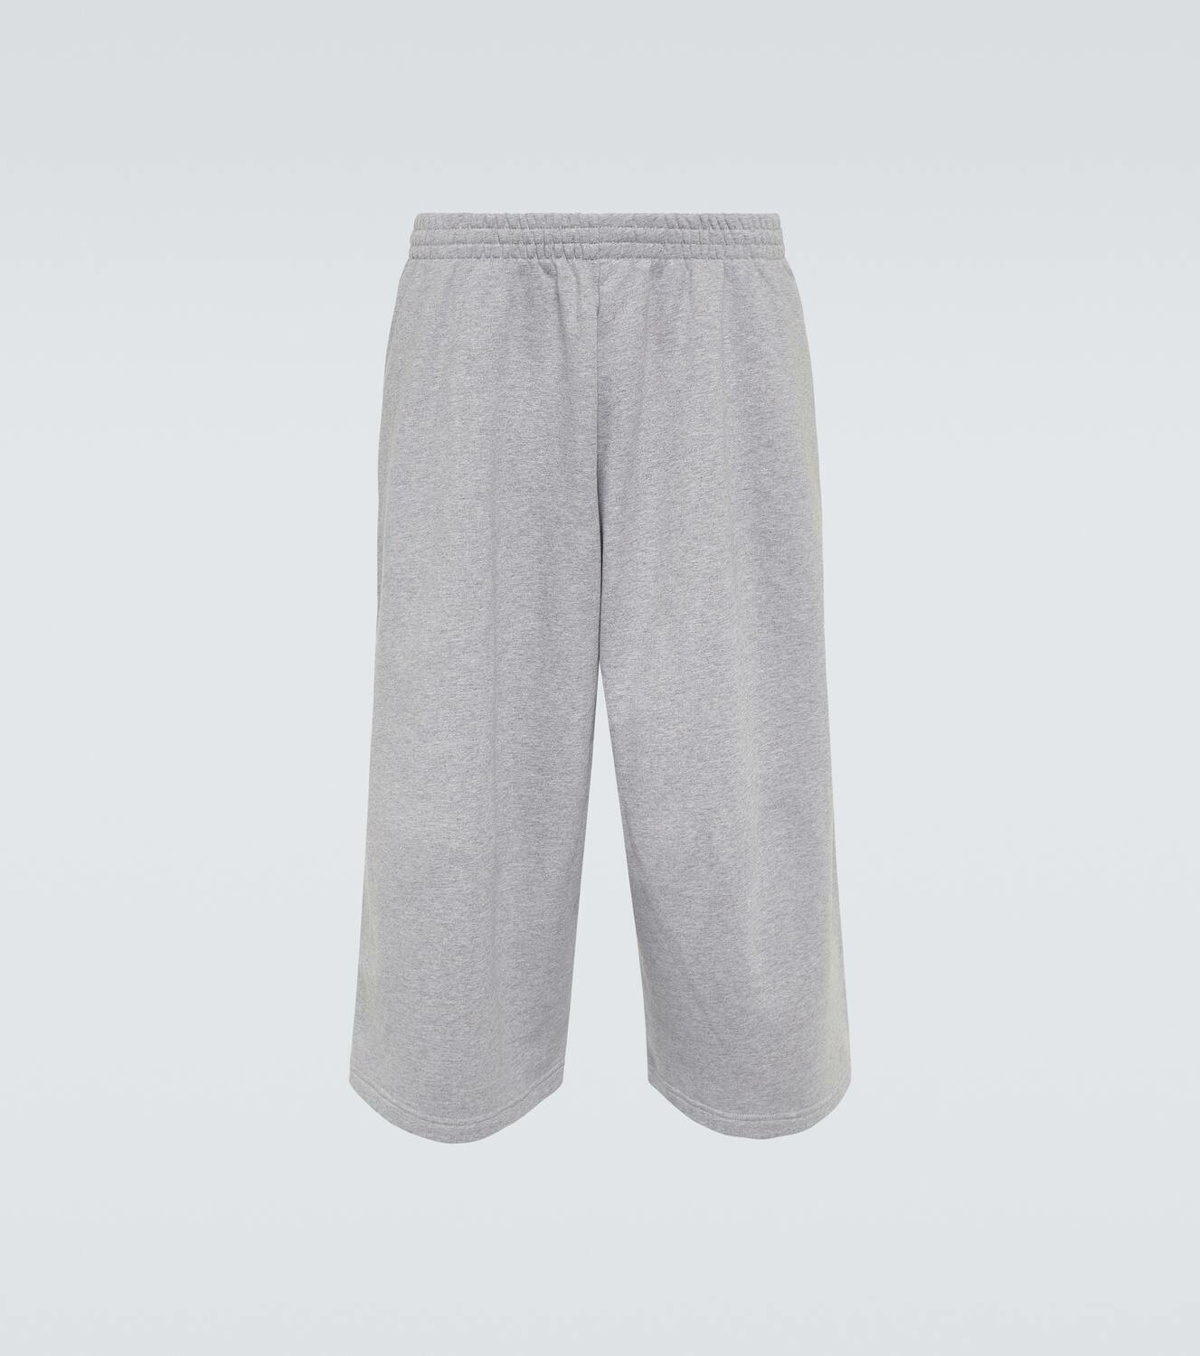 Balenciaga Cotton fleece shorts